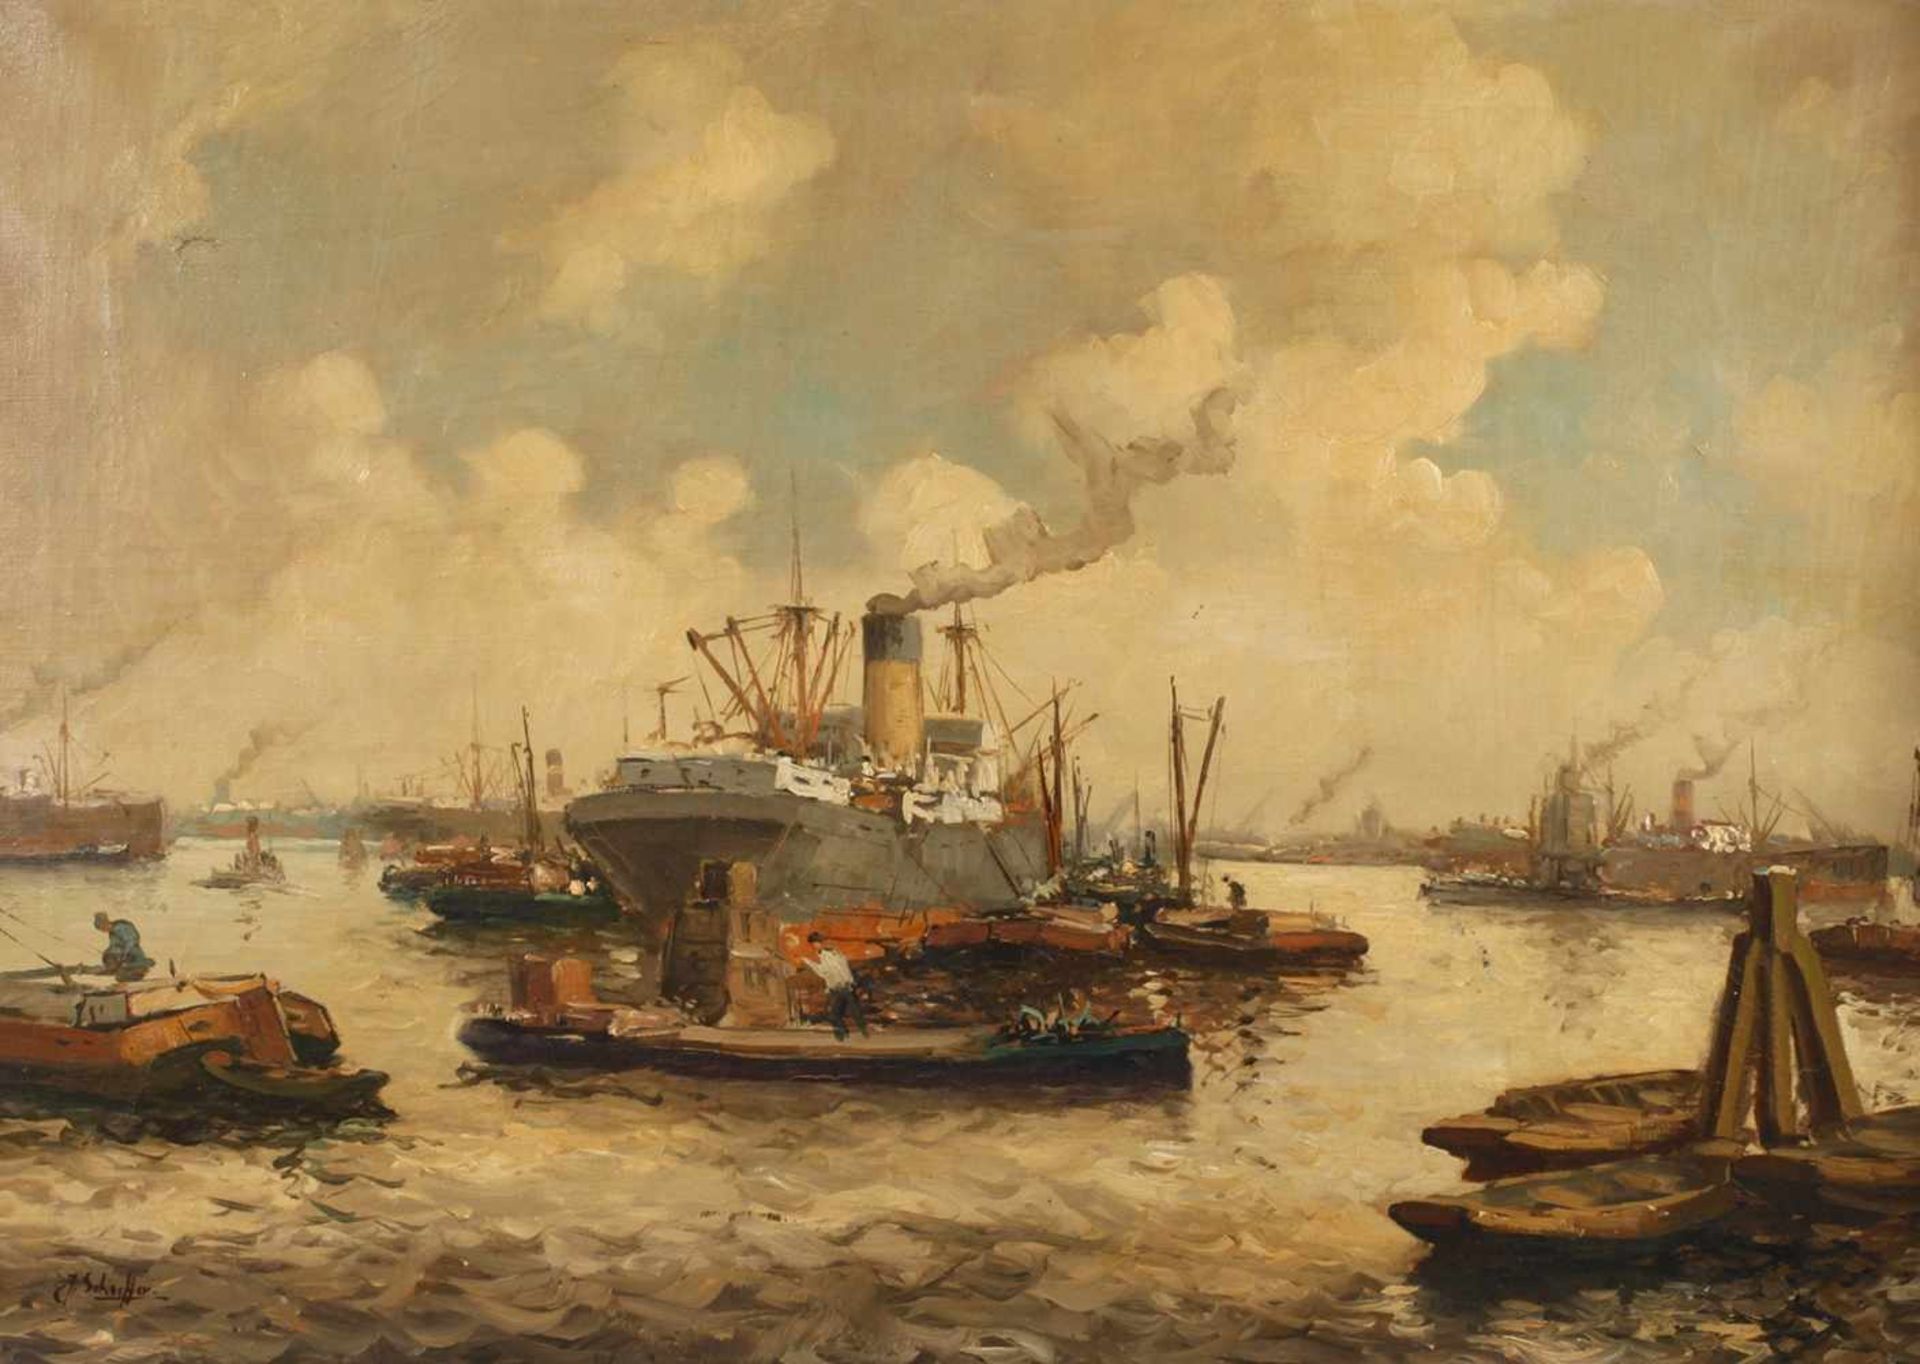 C. Schorffer, "Hamburger Hafen"Blick in das Hafenbecken mit zahlreichen Dampfern und kleineren